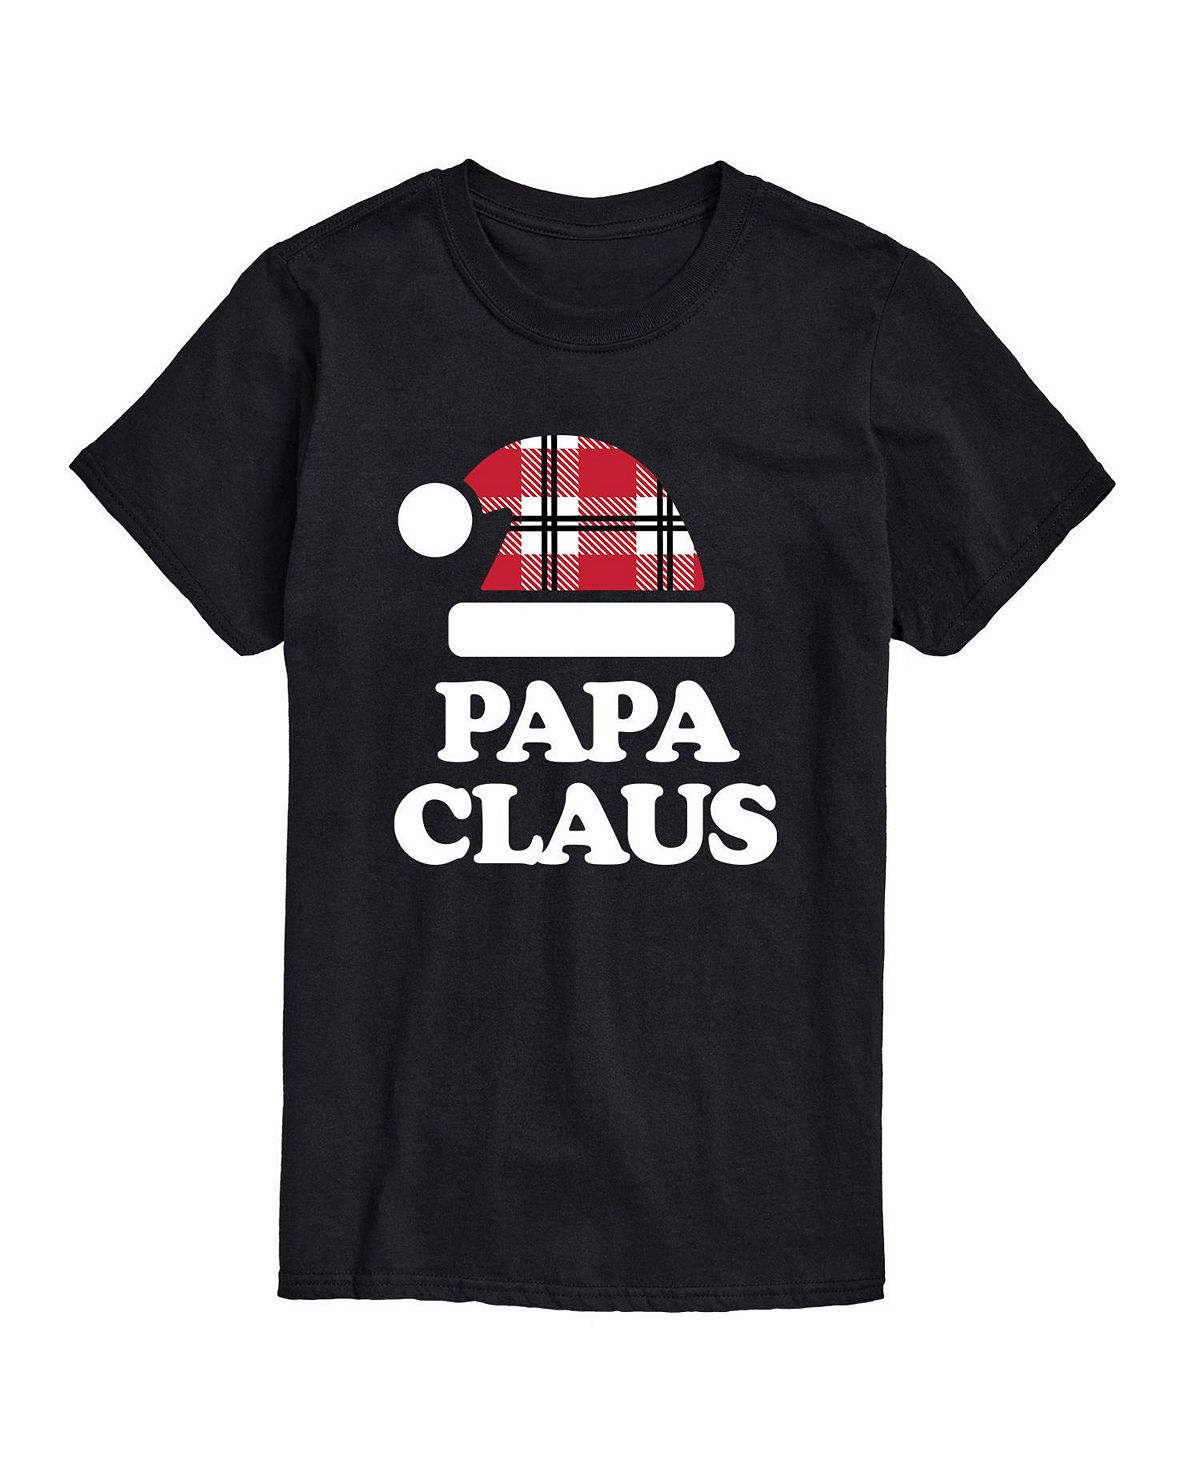 Мужская футболка с коротким рукавом папа клаус AIRWAVES, черный мужская футболка папа панда s черный